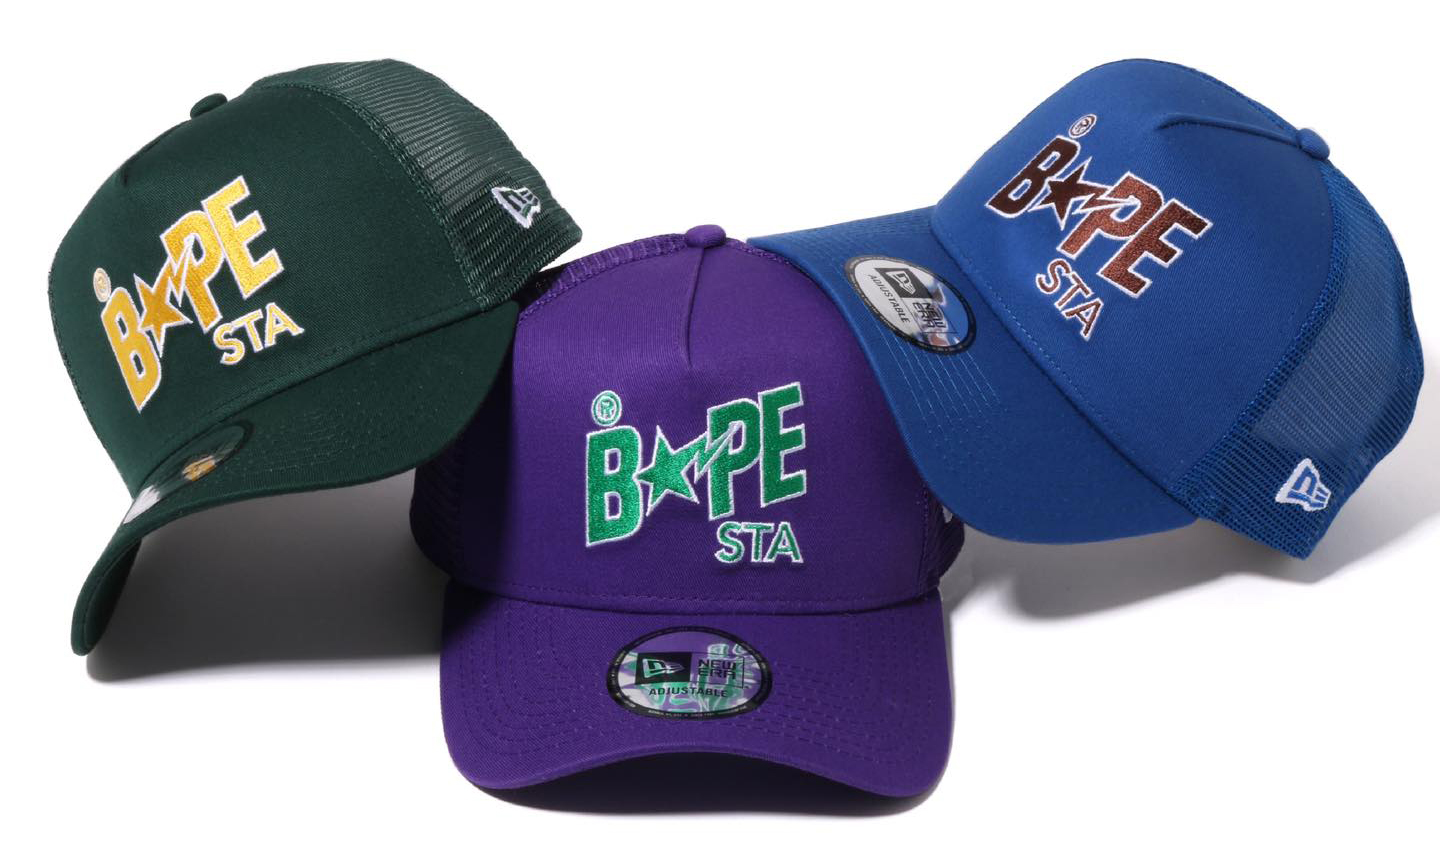 BAPE® x New Era 全新合作帽款发布